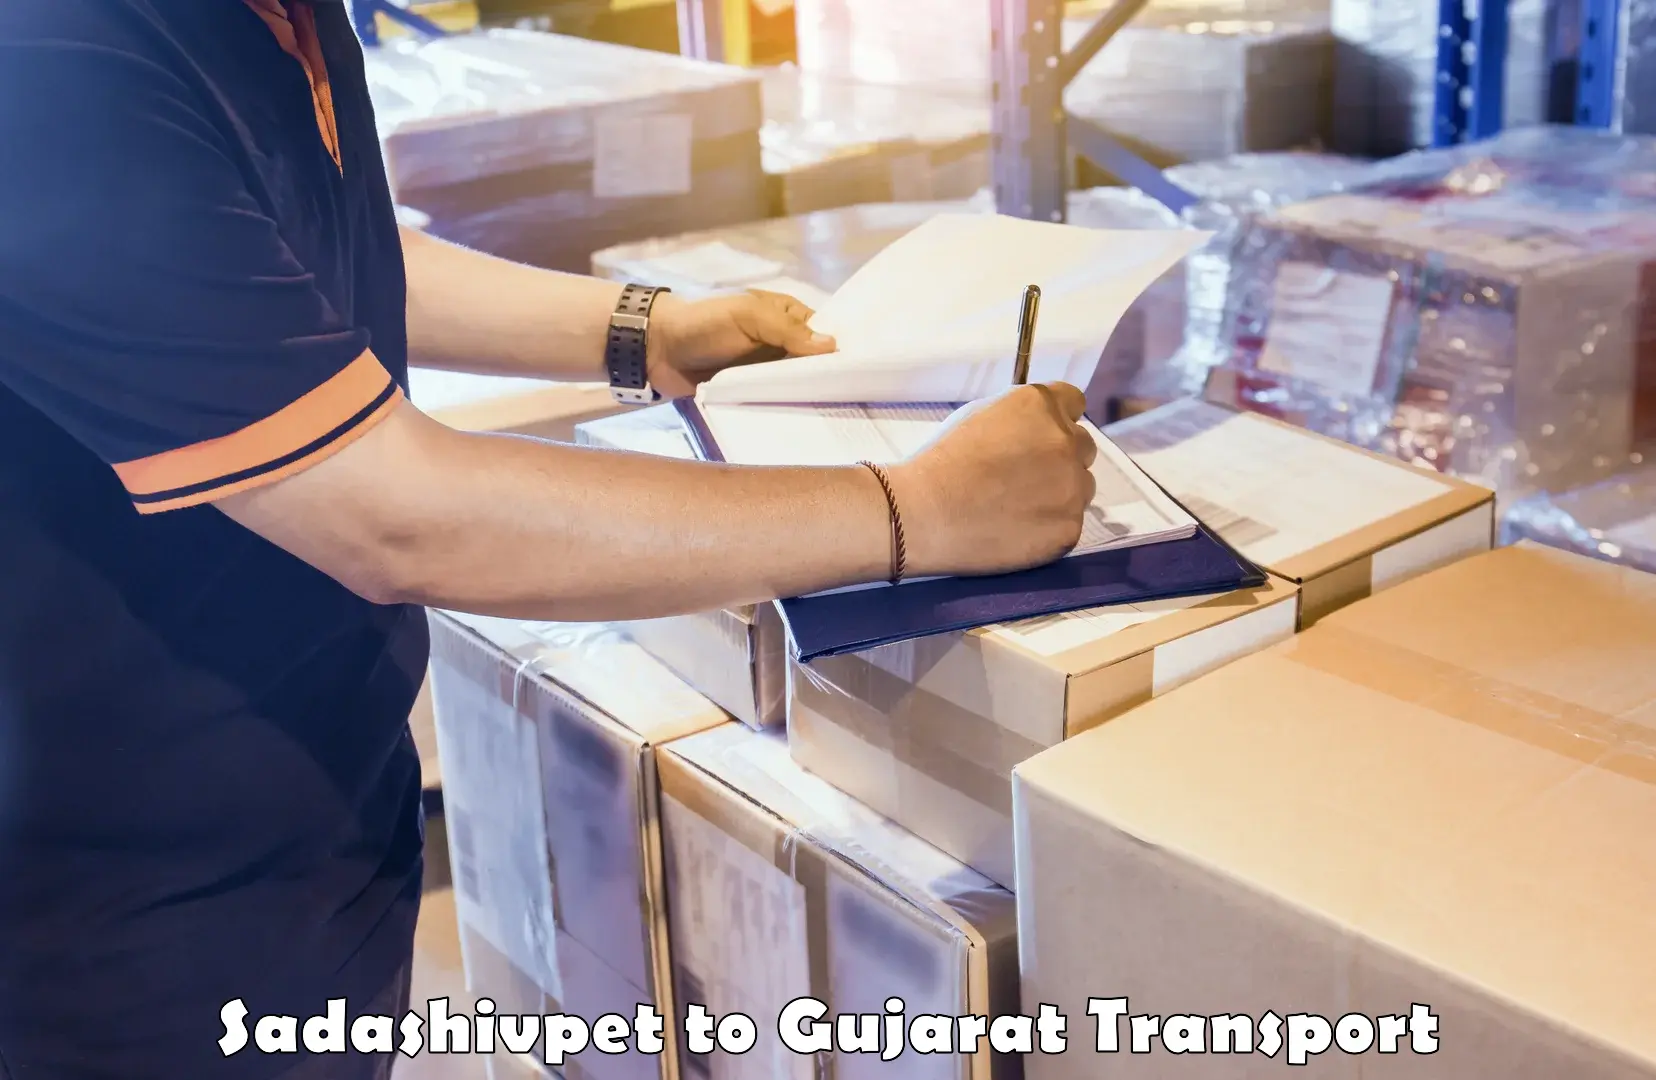 Cargo transport services Sadashivpet to Himmatnagar